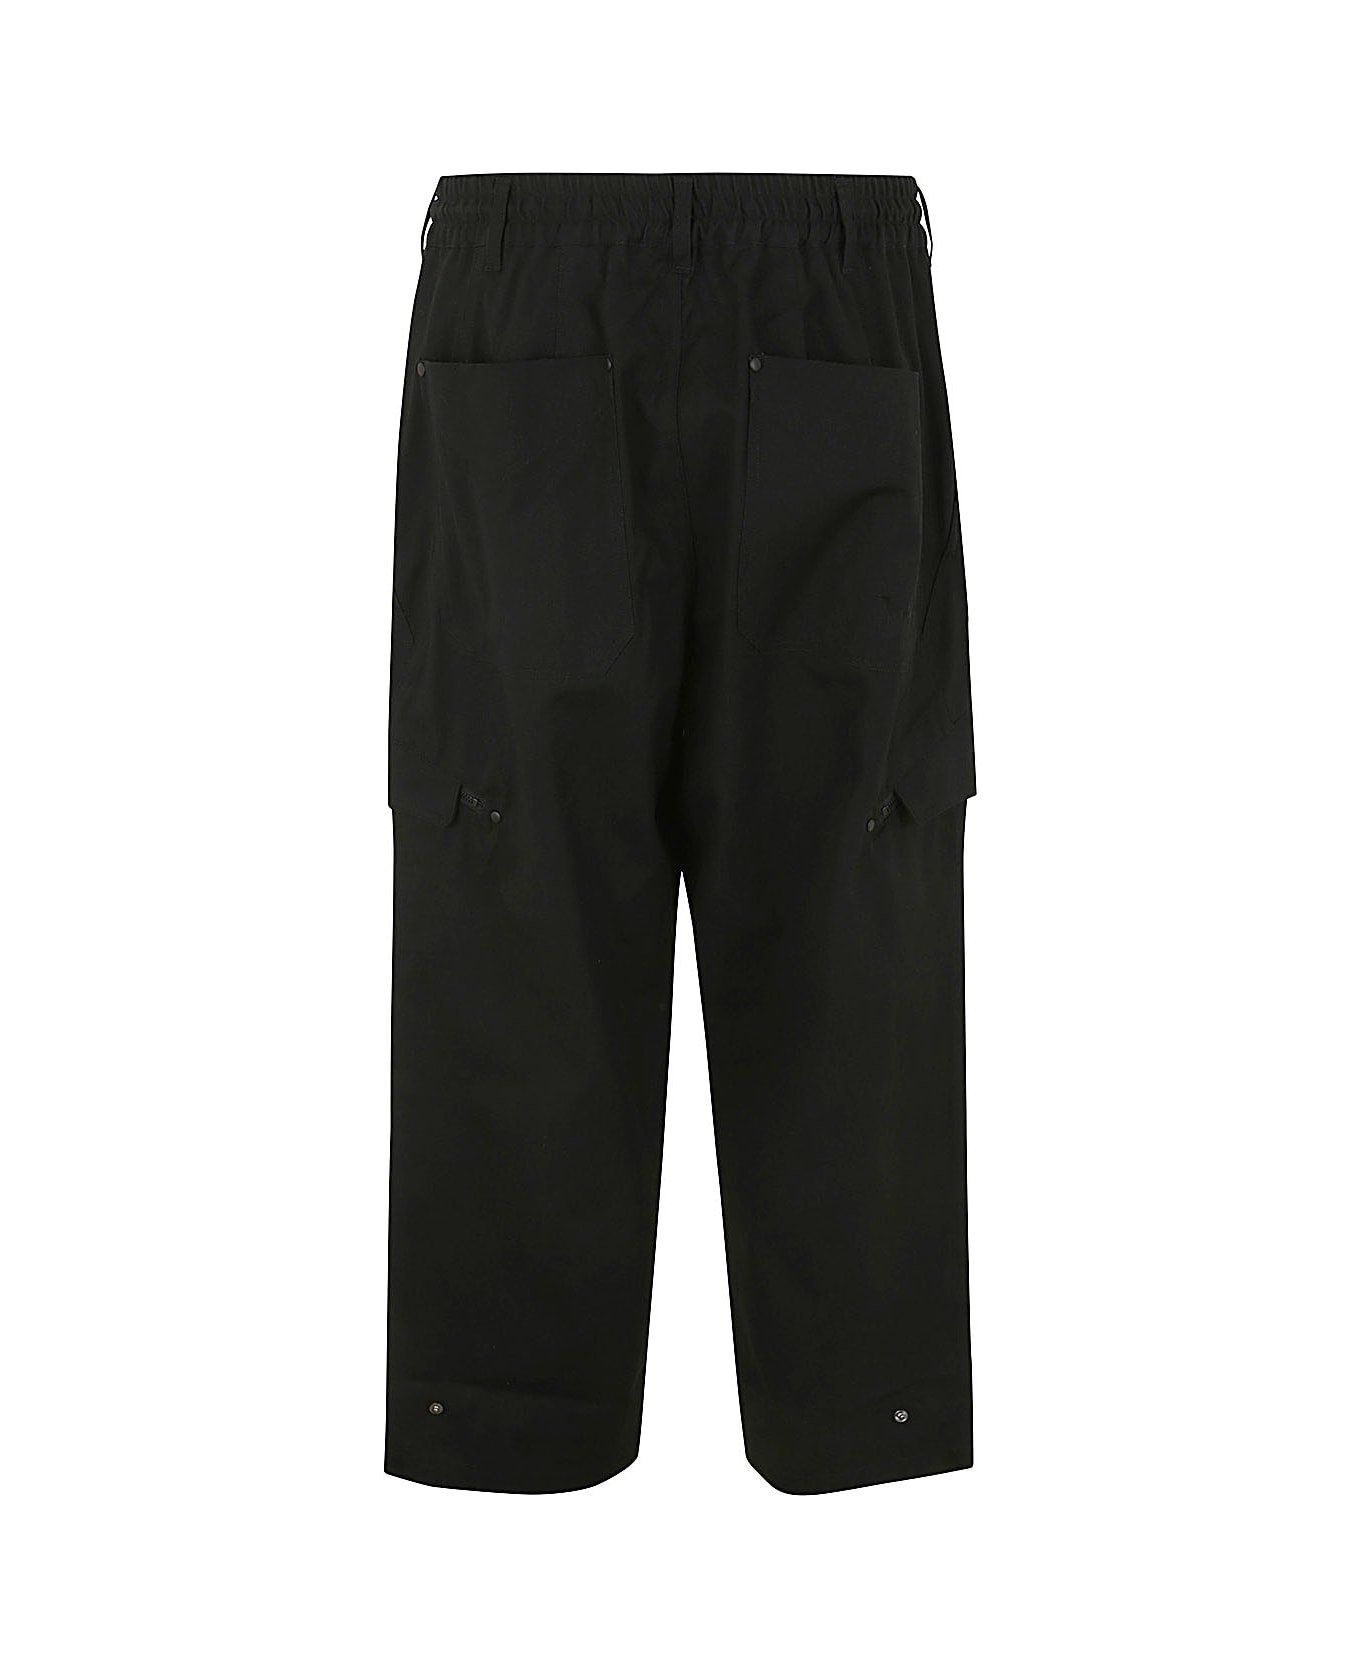 Y-3 Workwear Pants - Black